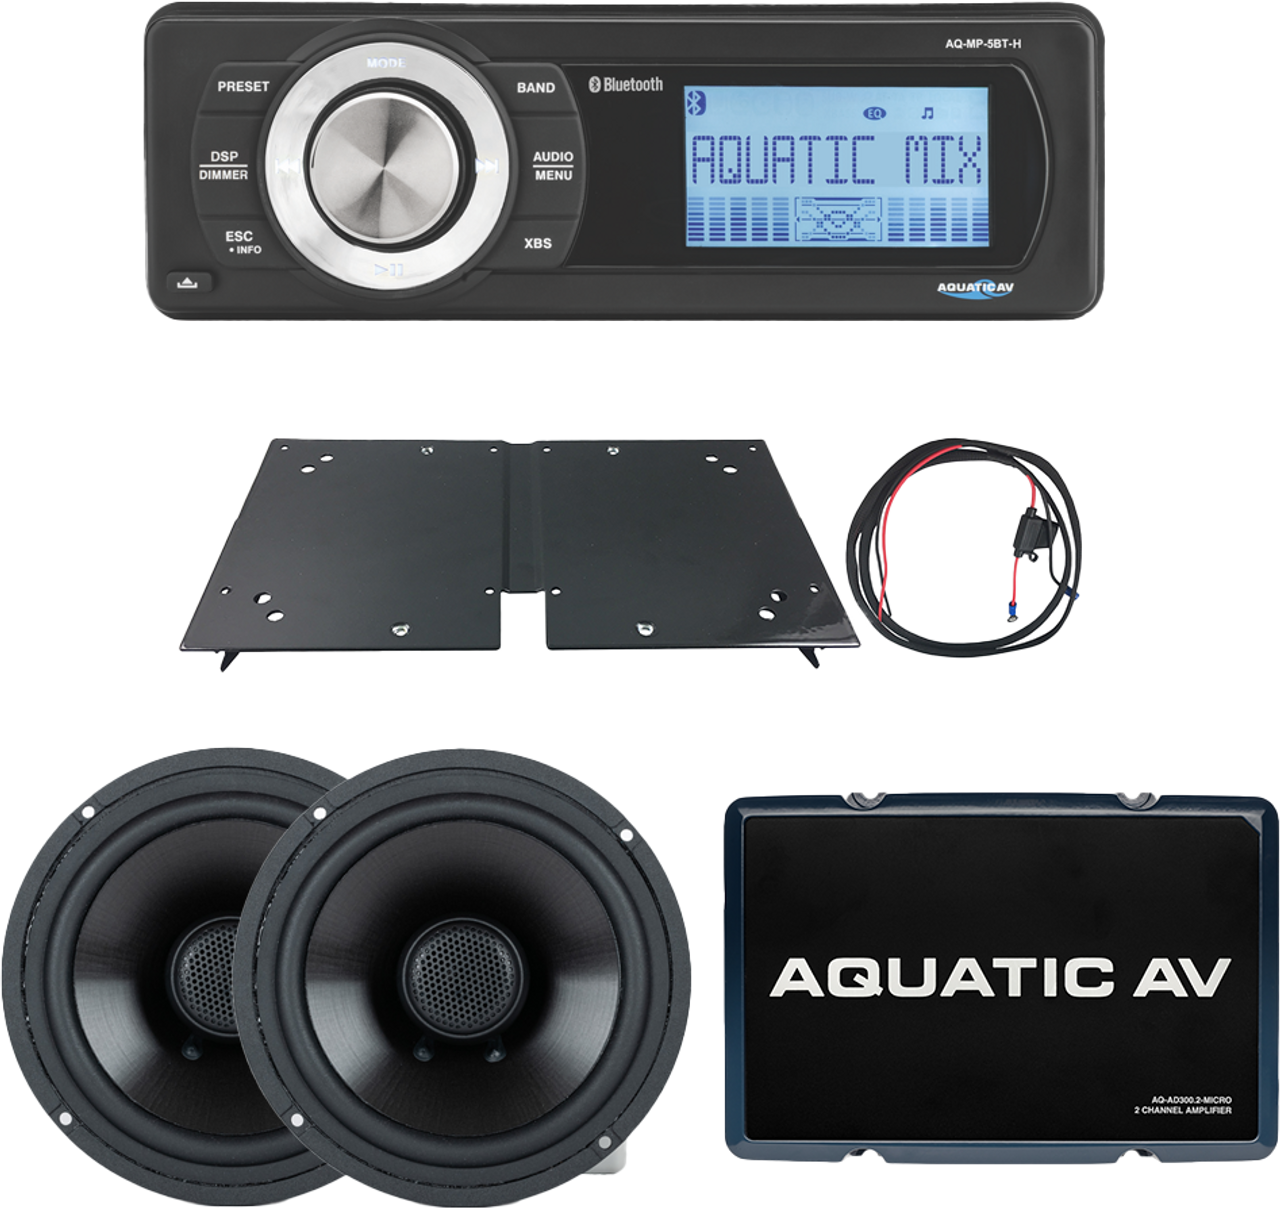 Aquatic AV BT200 - Sports Kit Flht `98-13